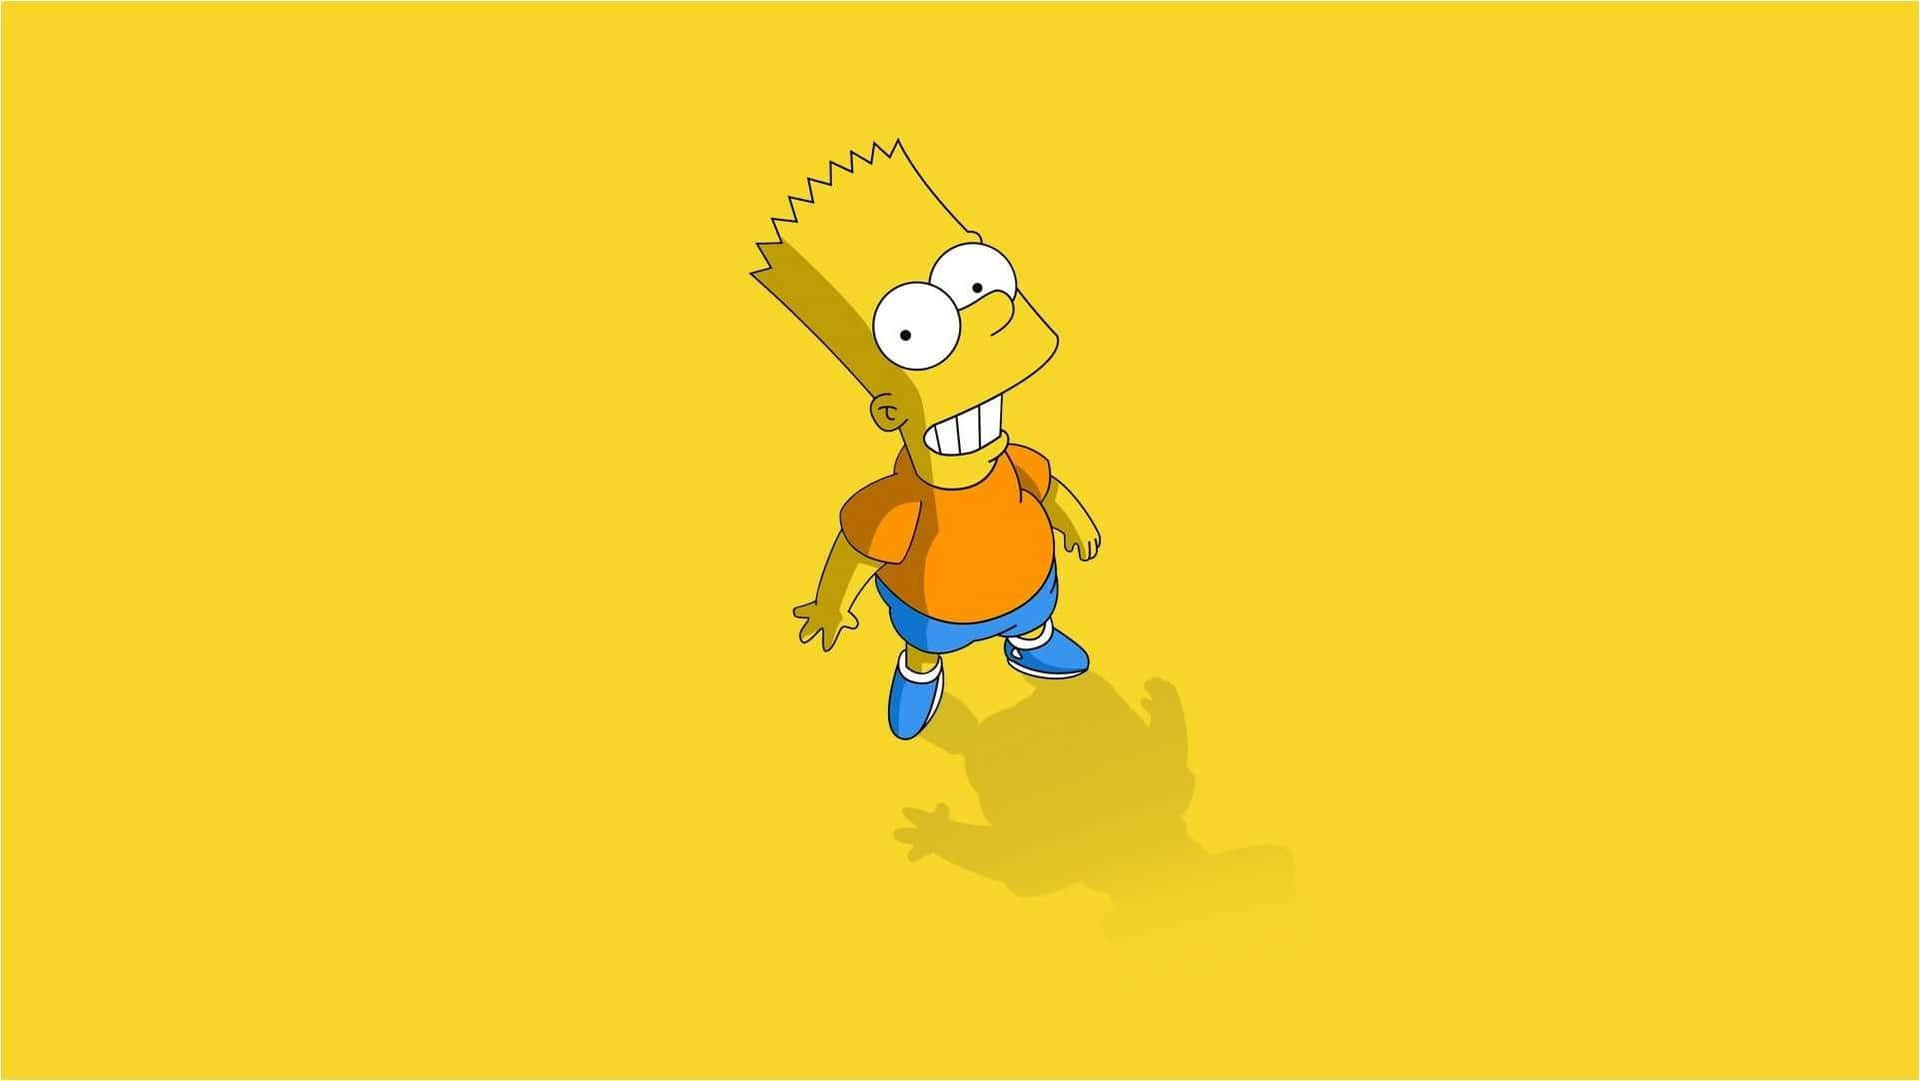 Lev fri og nyd dig selv! - Bart Simpson Wallpaper